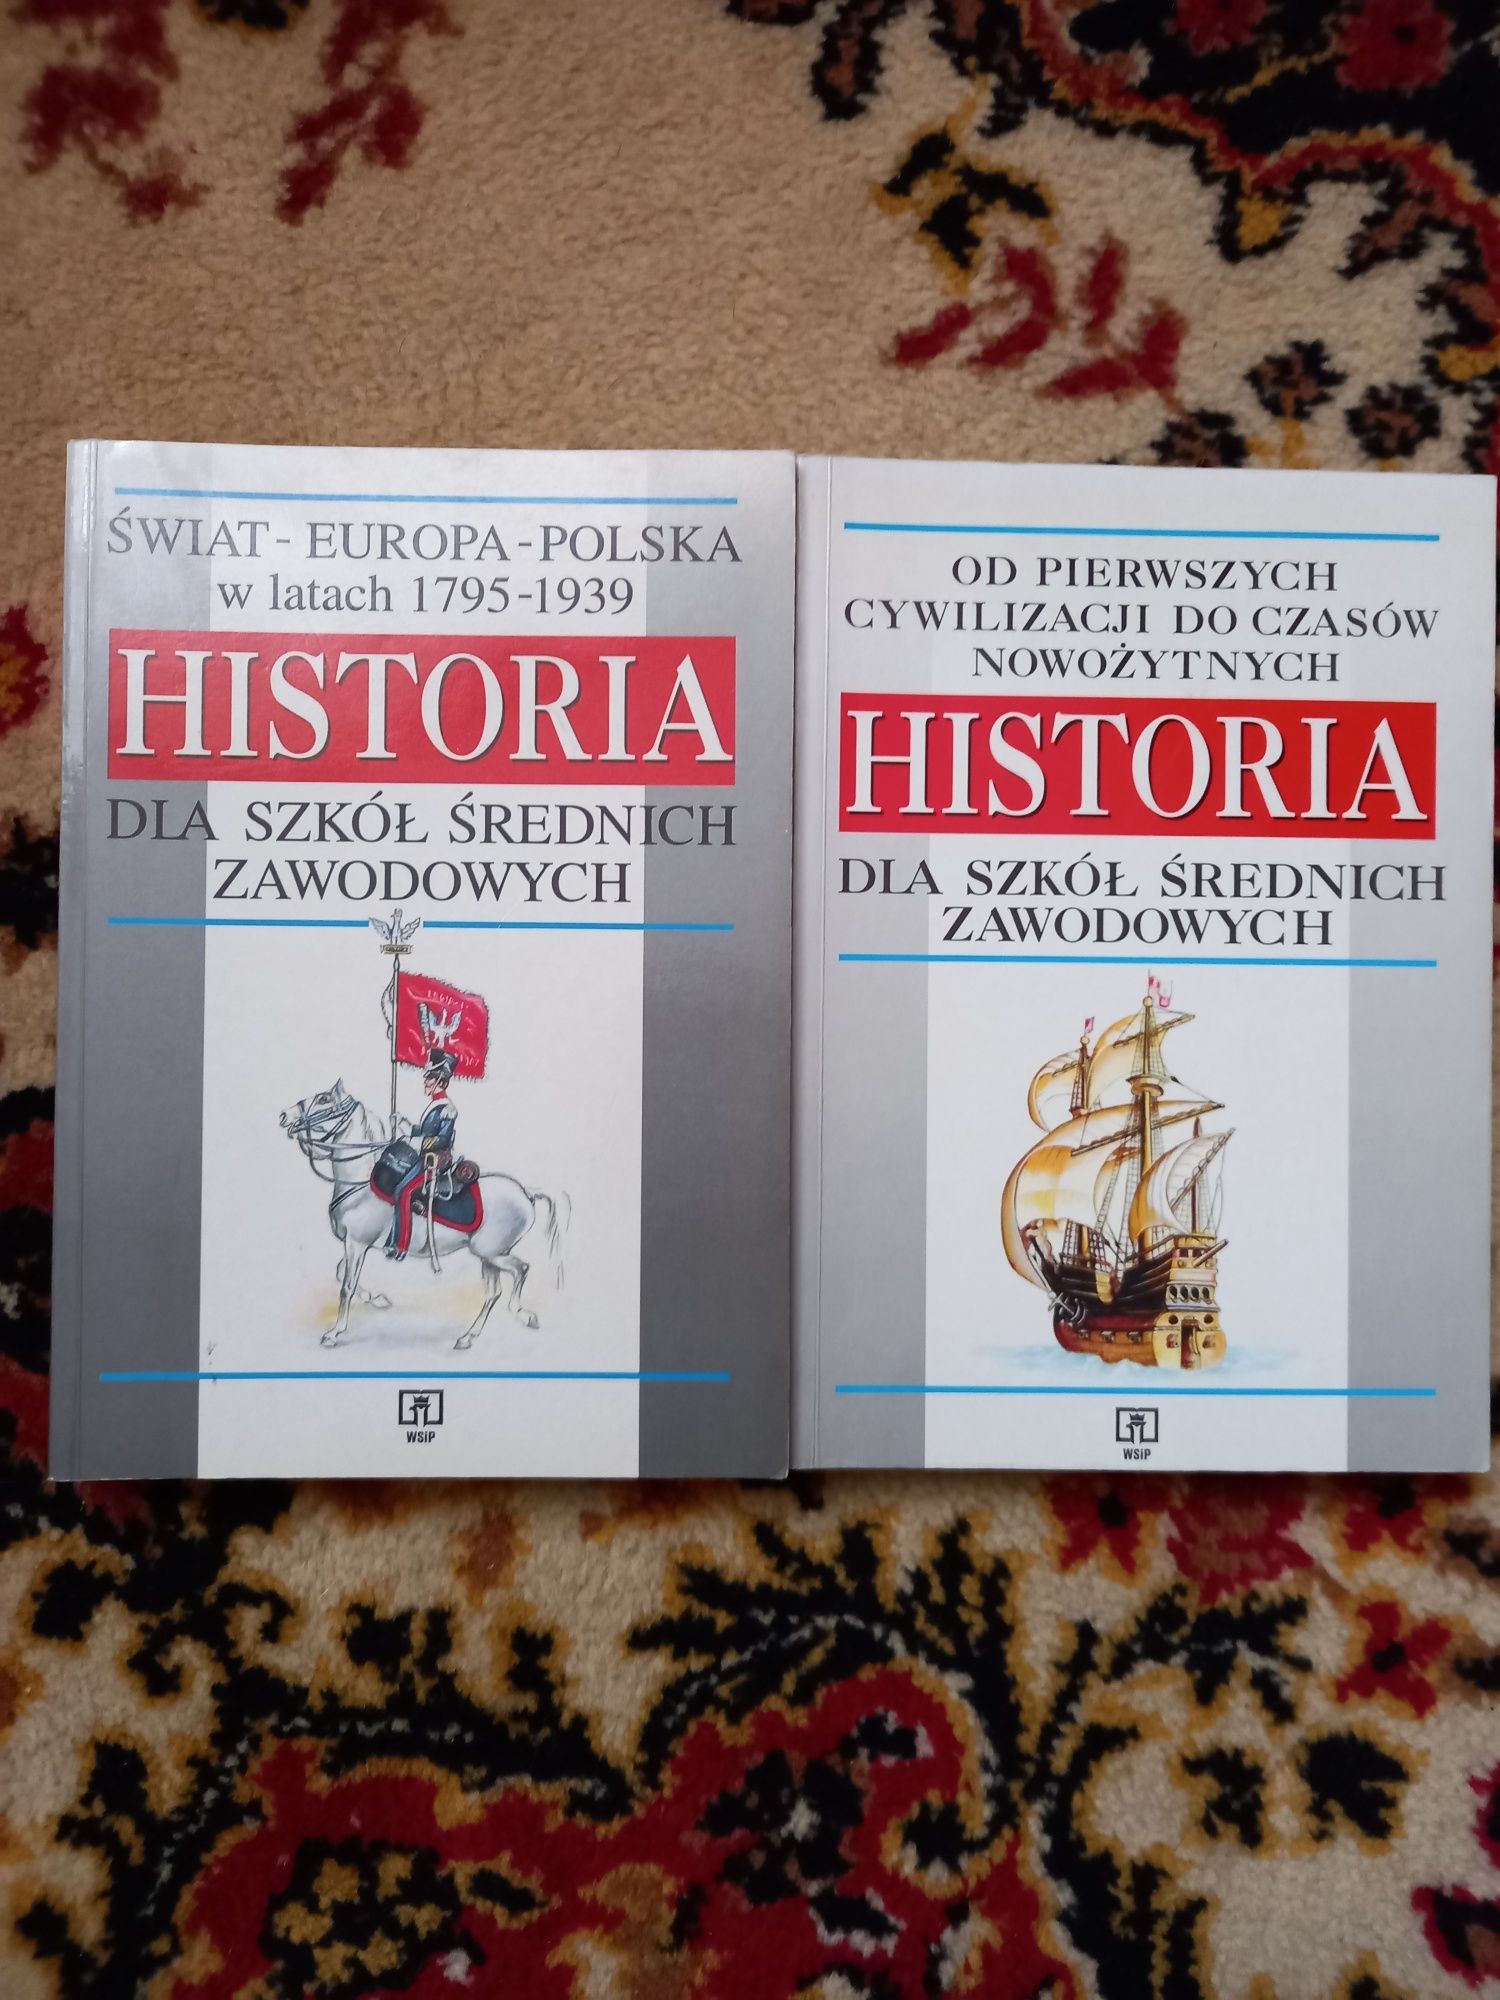 Historia Świat Europa Polska 1795/1939 i Historia 1 cywilizacji do now